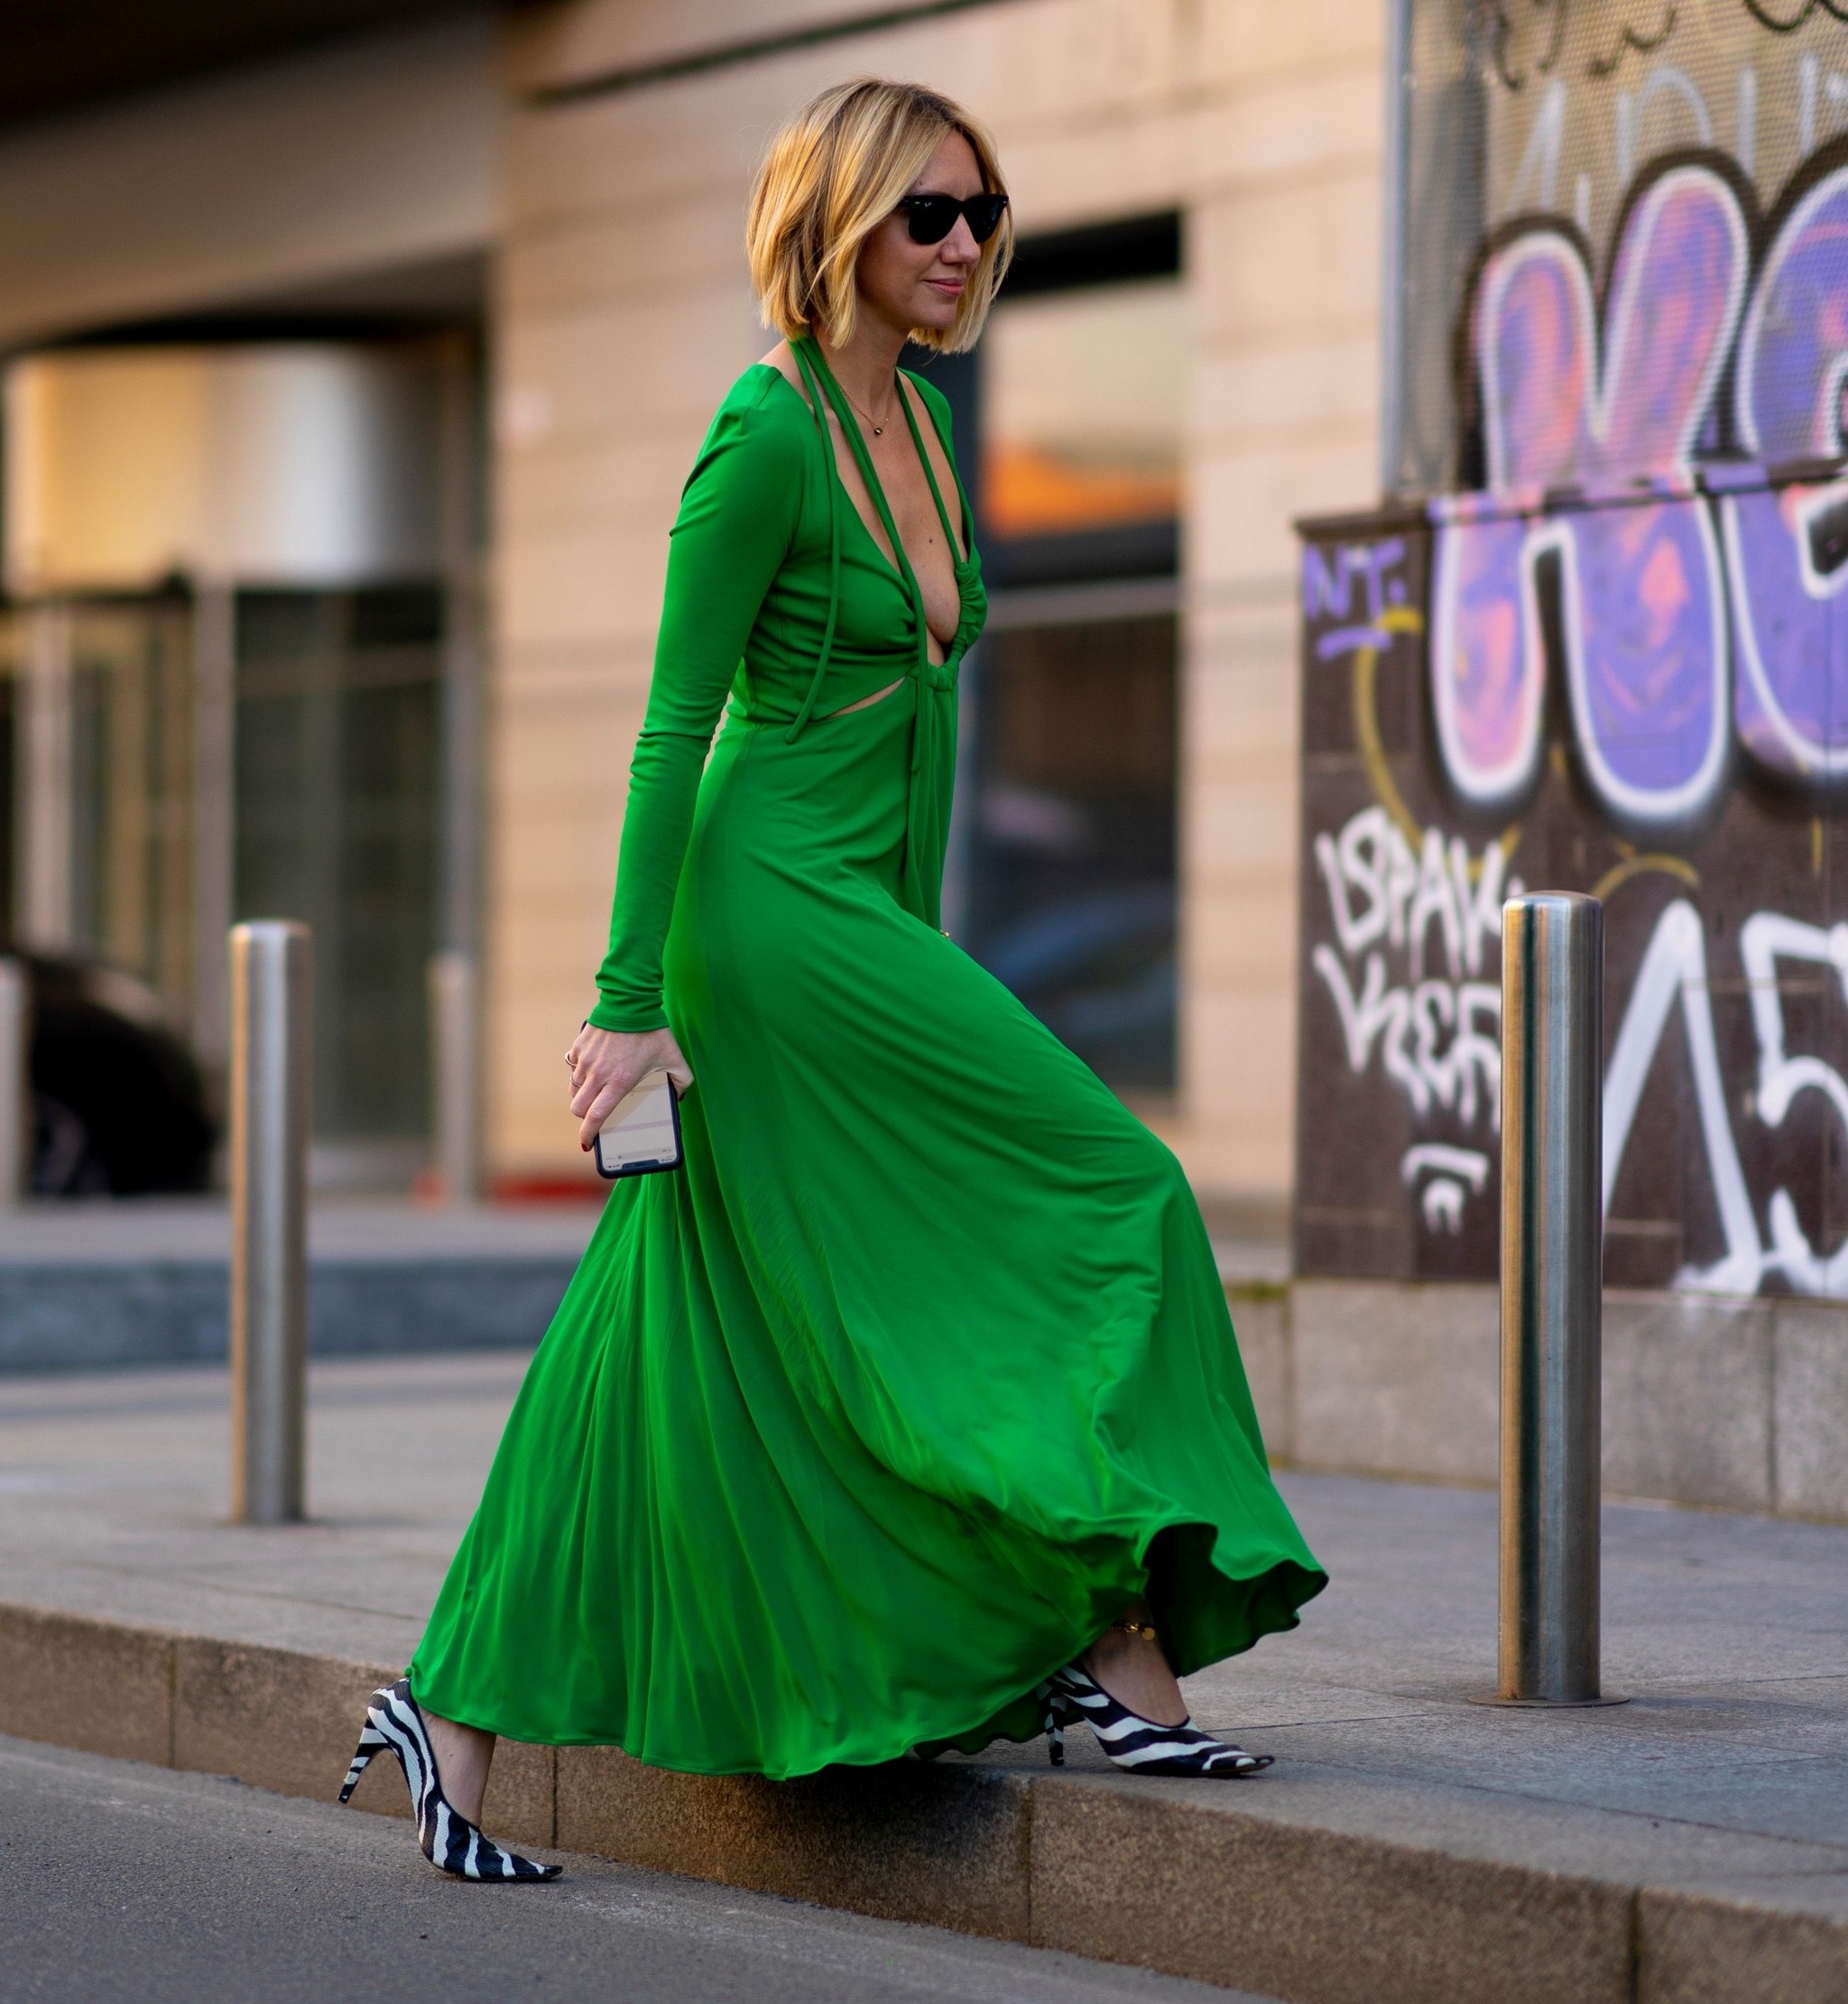 Los 5 vestidos más deseados del street style están ya en Zara | Telva.com